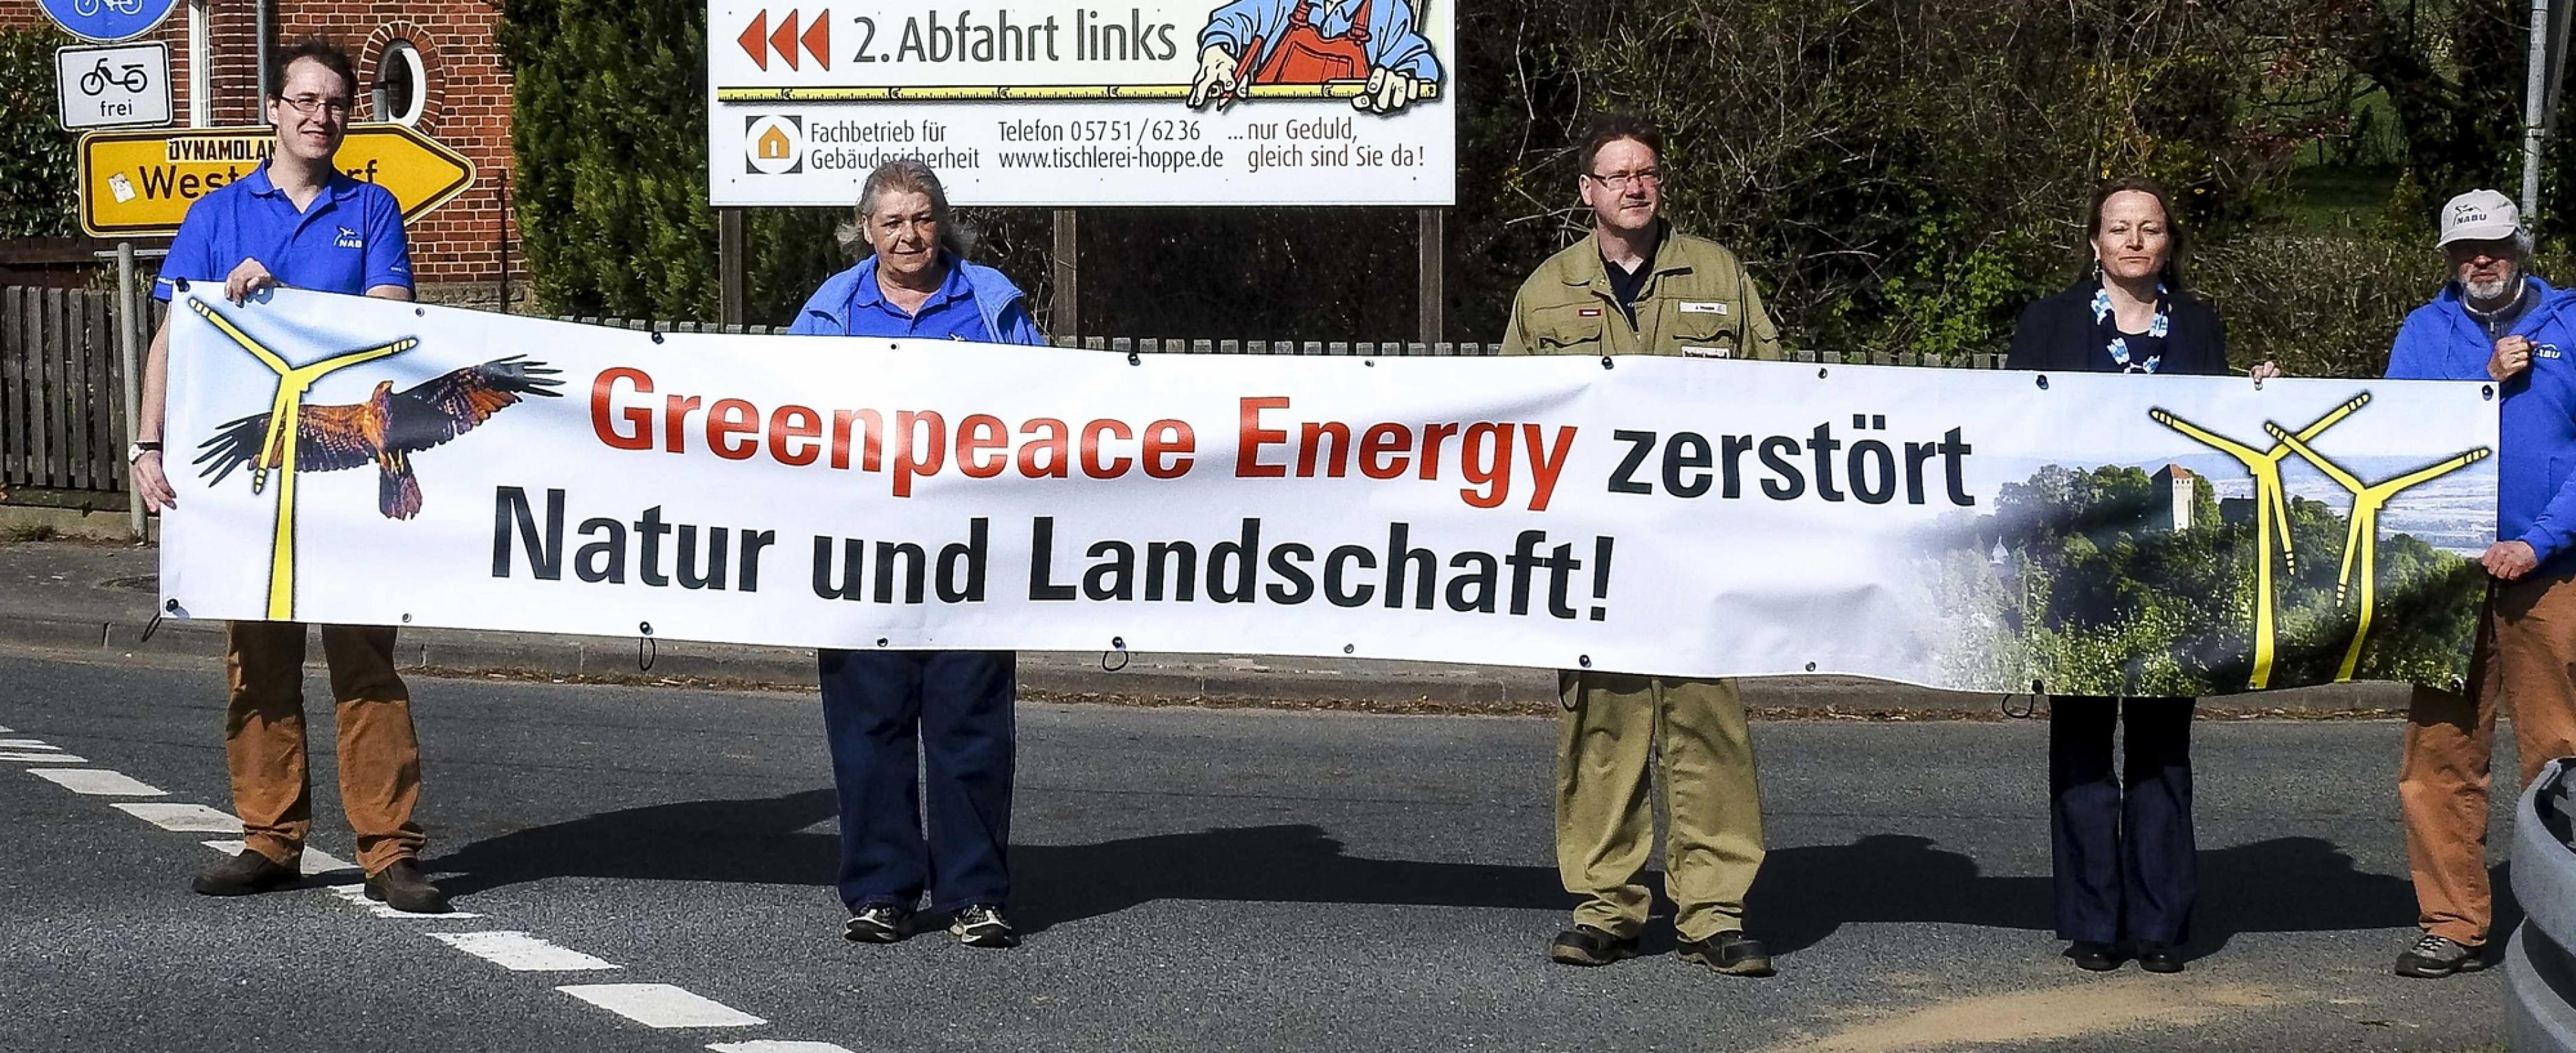 Naturschützer protestieren gegen Greenpeace energy – Früher waren Protestbanner eine Domäne von Greenpeace.